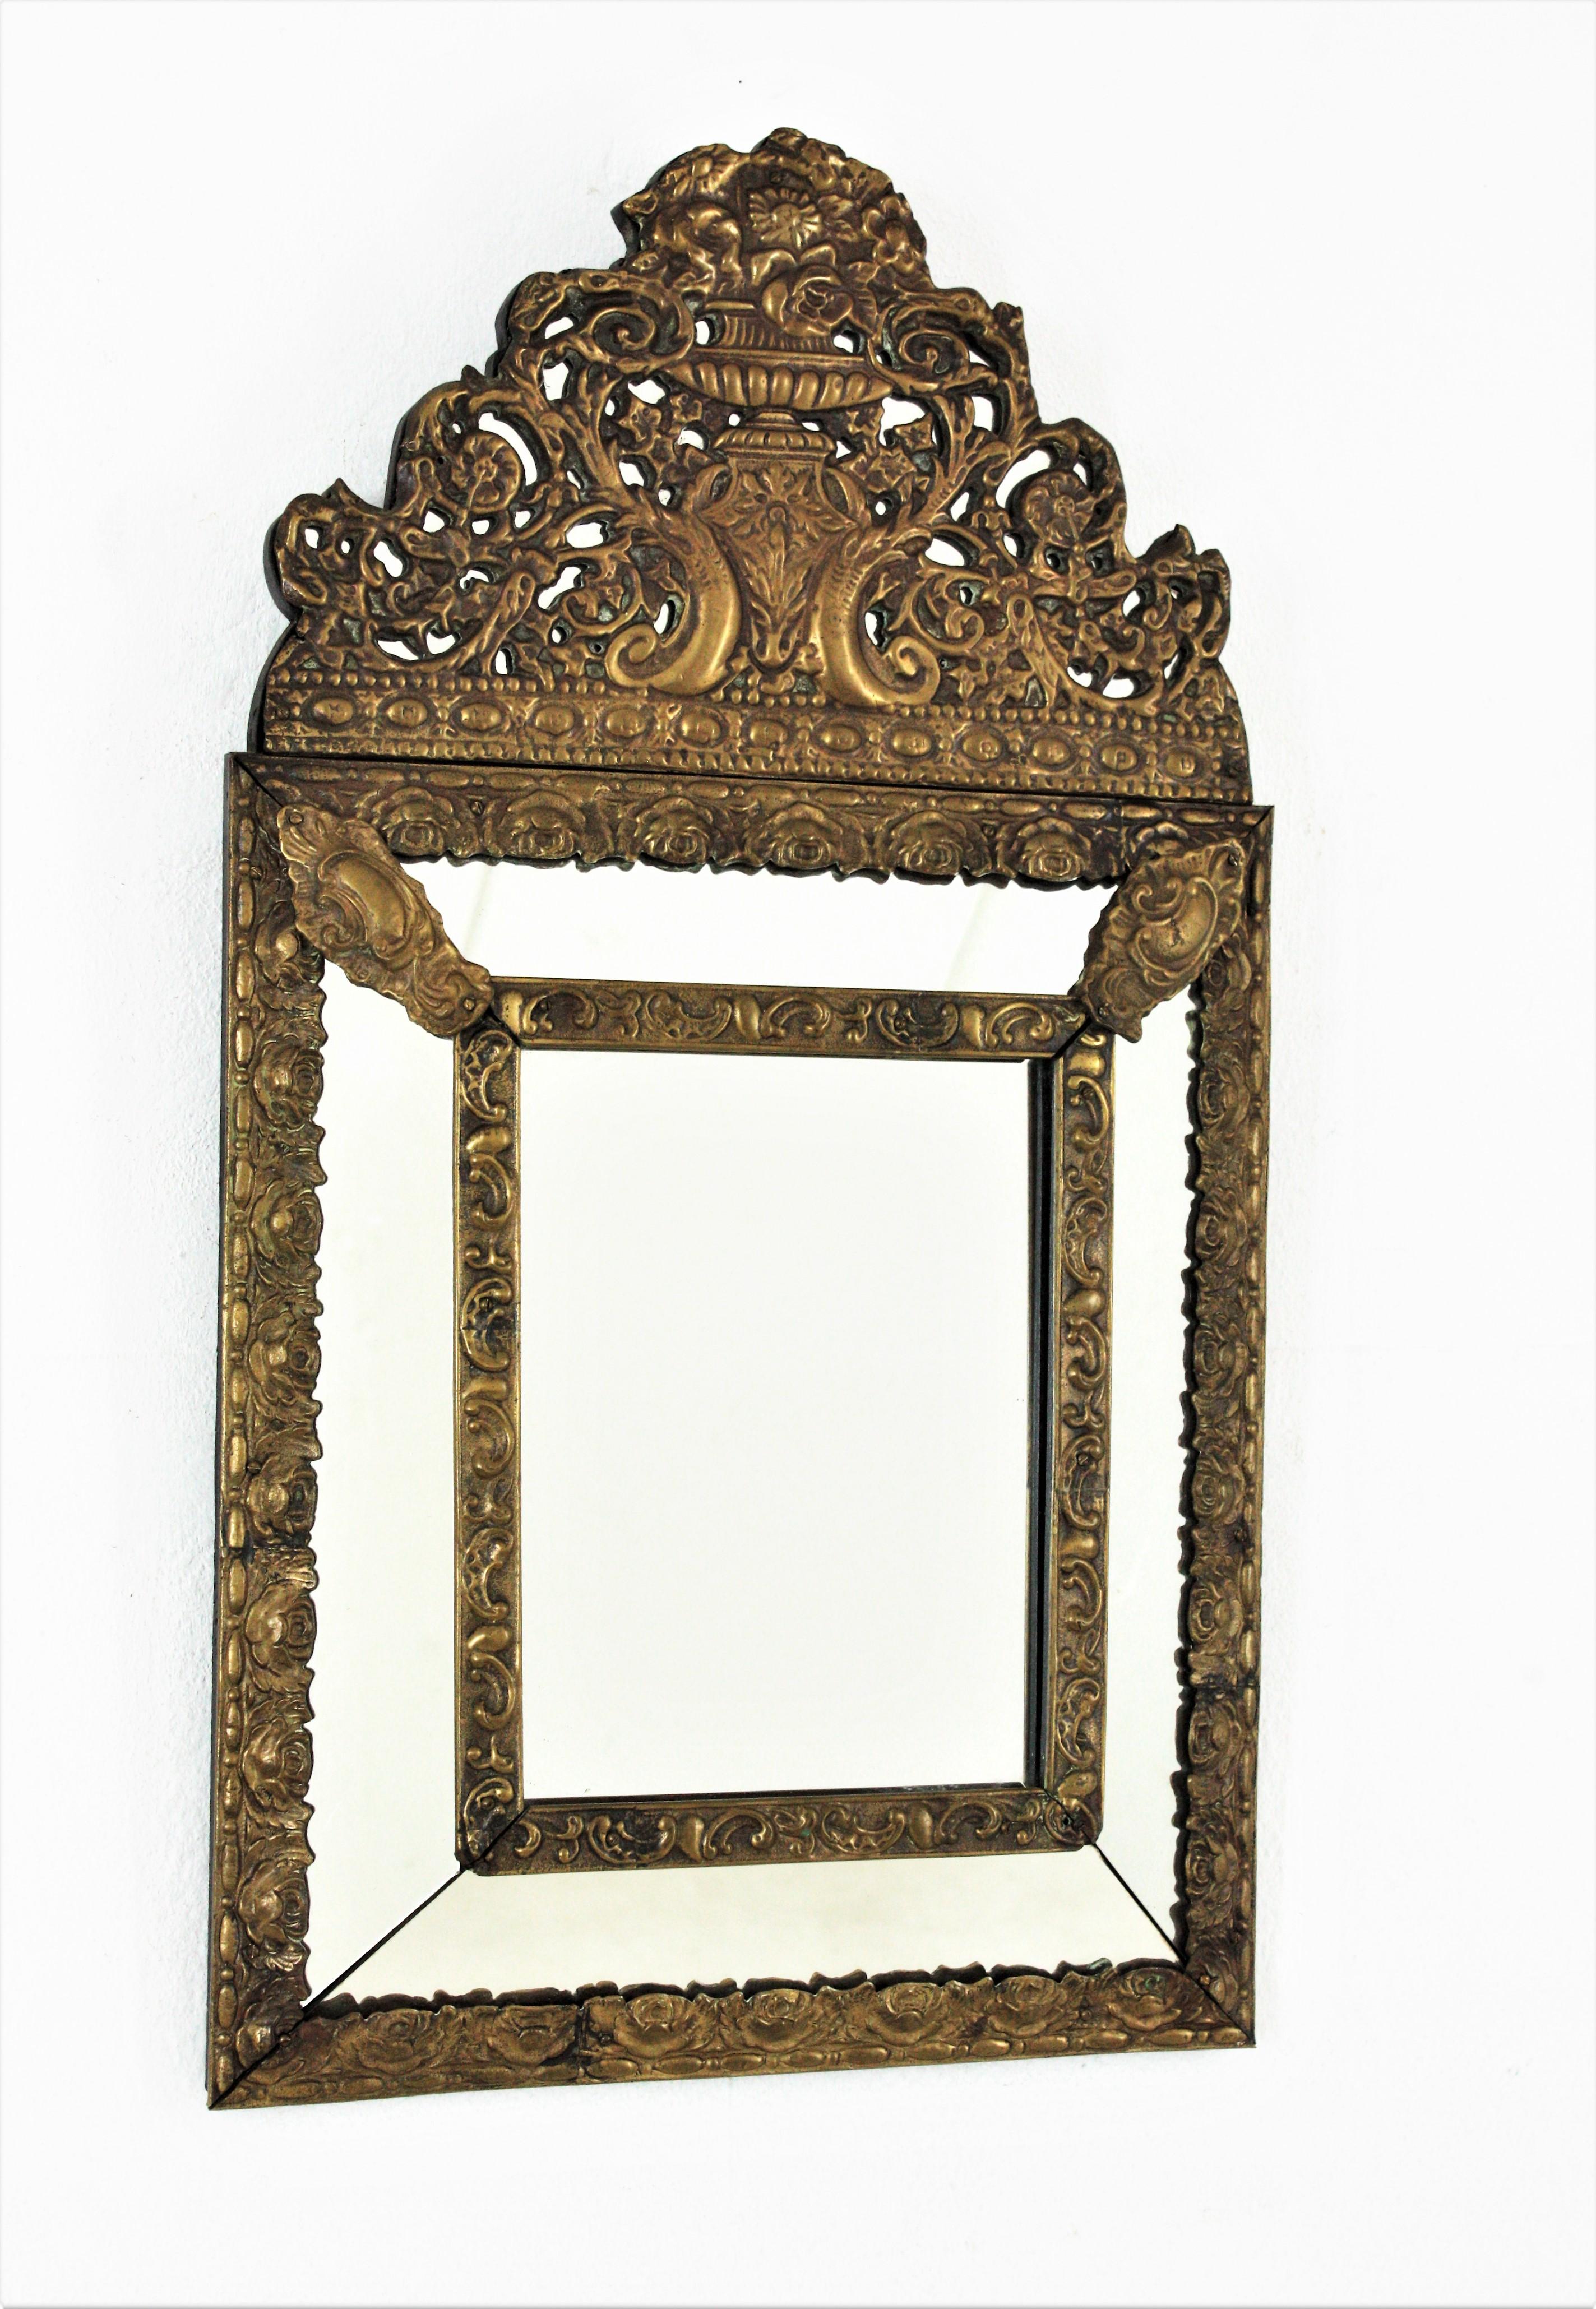 Ein eleganter Napoleon-III-Spiegel mit zentralem Glas und vier rechteckigen Gläsern, die durch dekorative Messing-Repousse-Blatt-Blumenmuster miteinander verbunden sind, sowie einer eleganten, filigranen Messing-Repousse-Krone.
Dieser verzierte